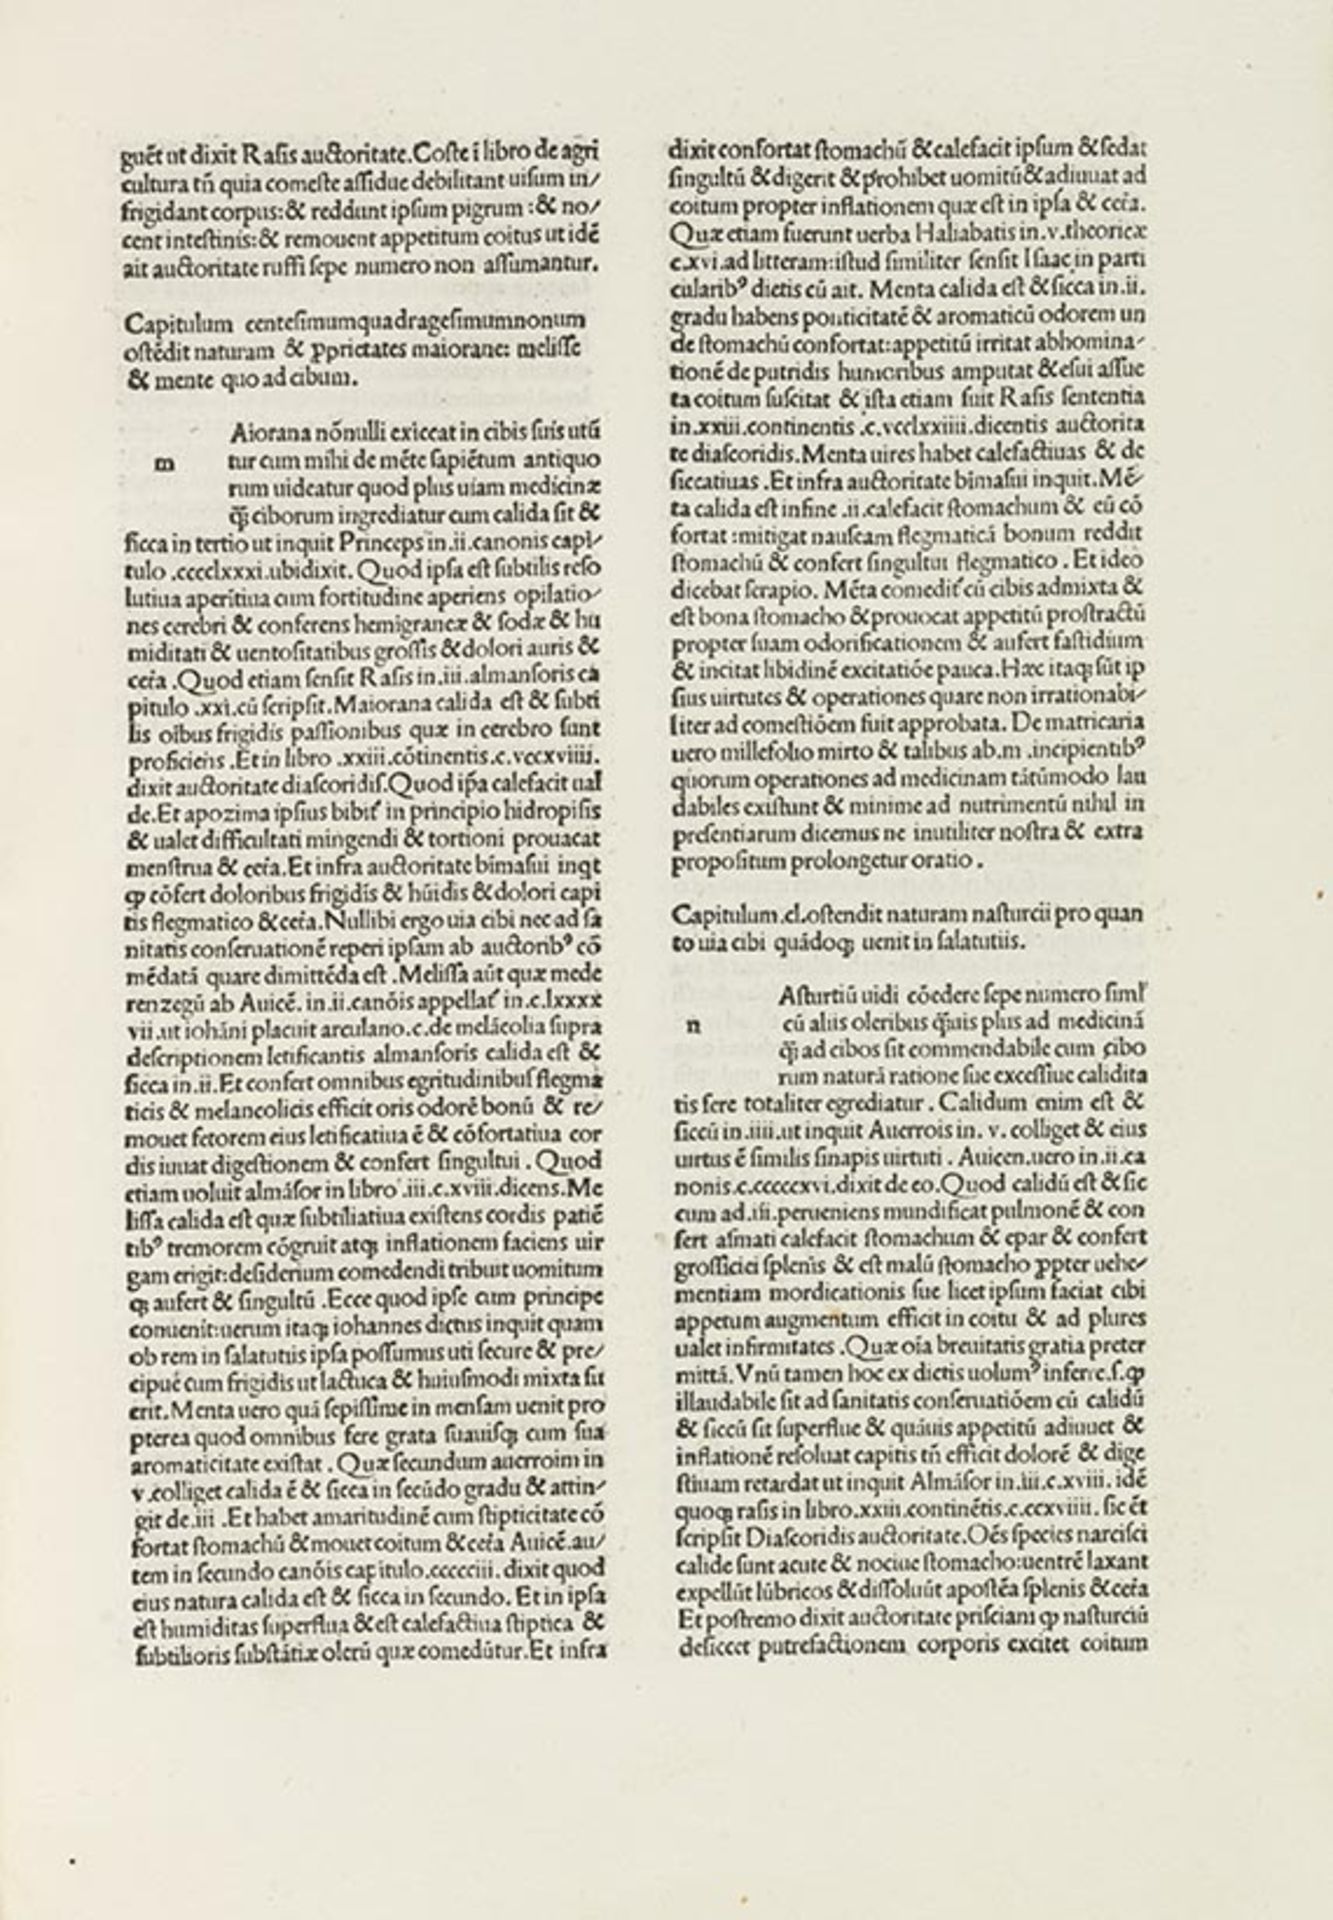 Antonio Gazio, Frühe Diätetik Corona florida medicinae sive de conservatione sanitatis.